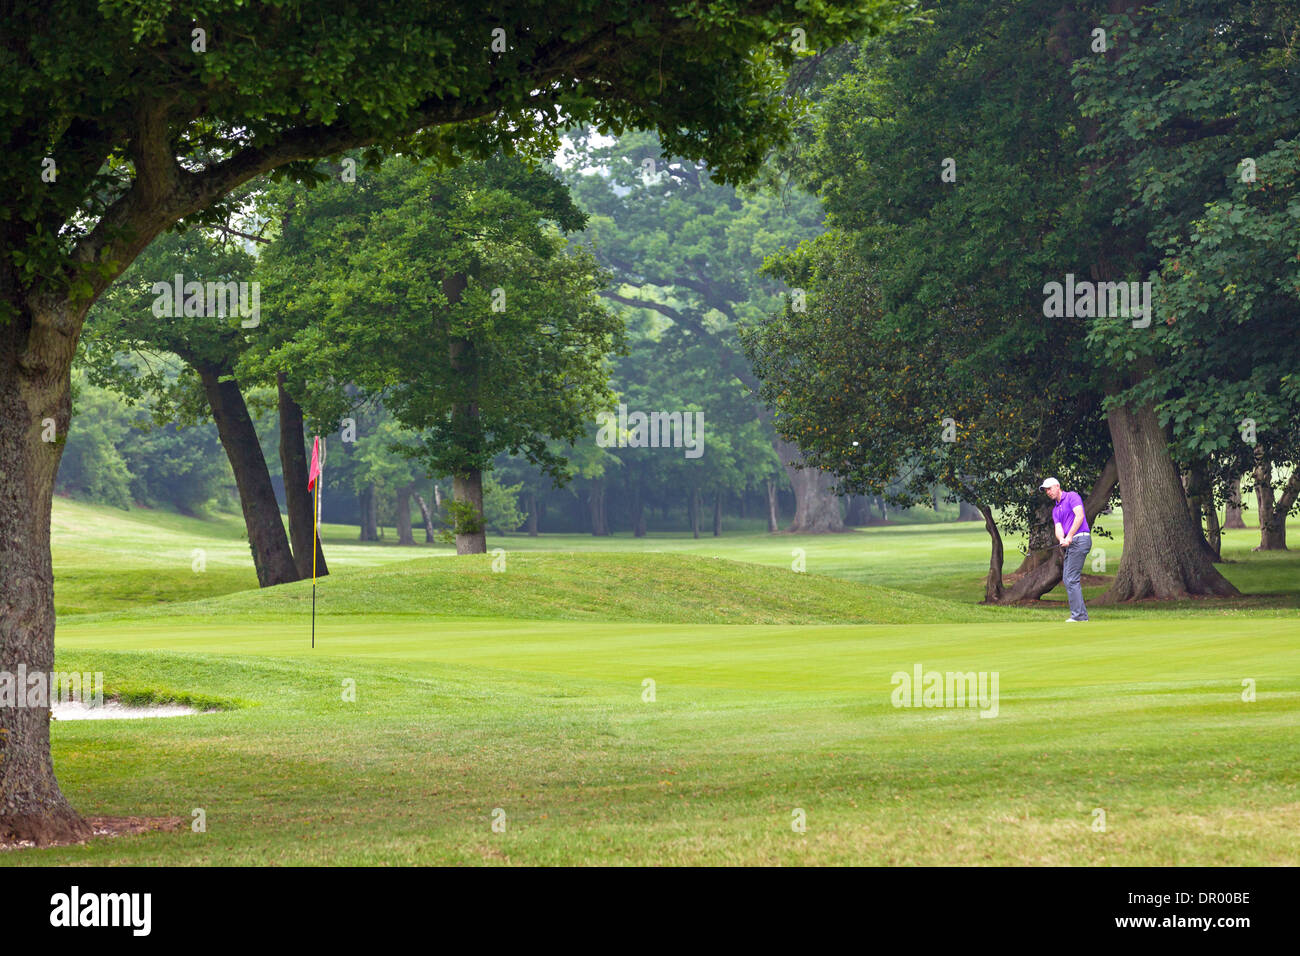 Il Golfer scheggiatura sul putting green con la palla a metà in aria. Foto Stock